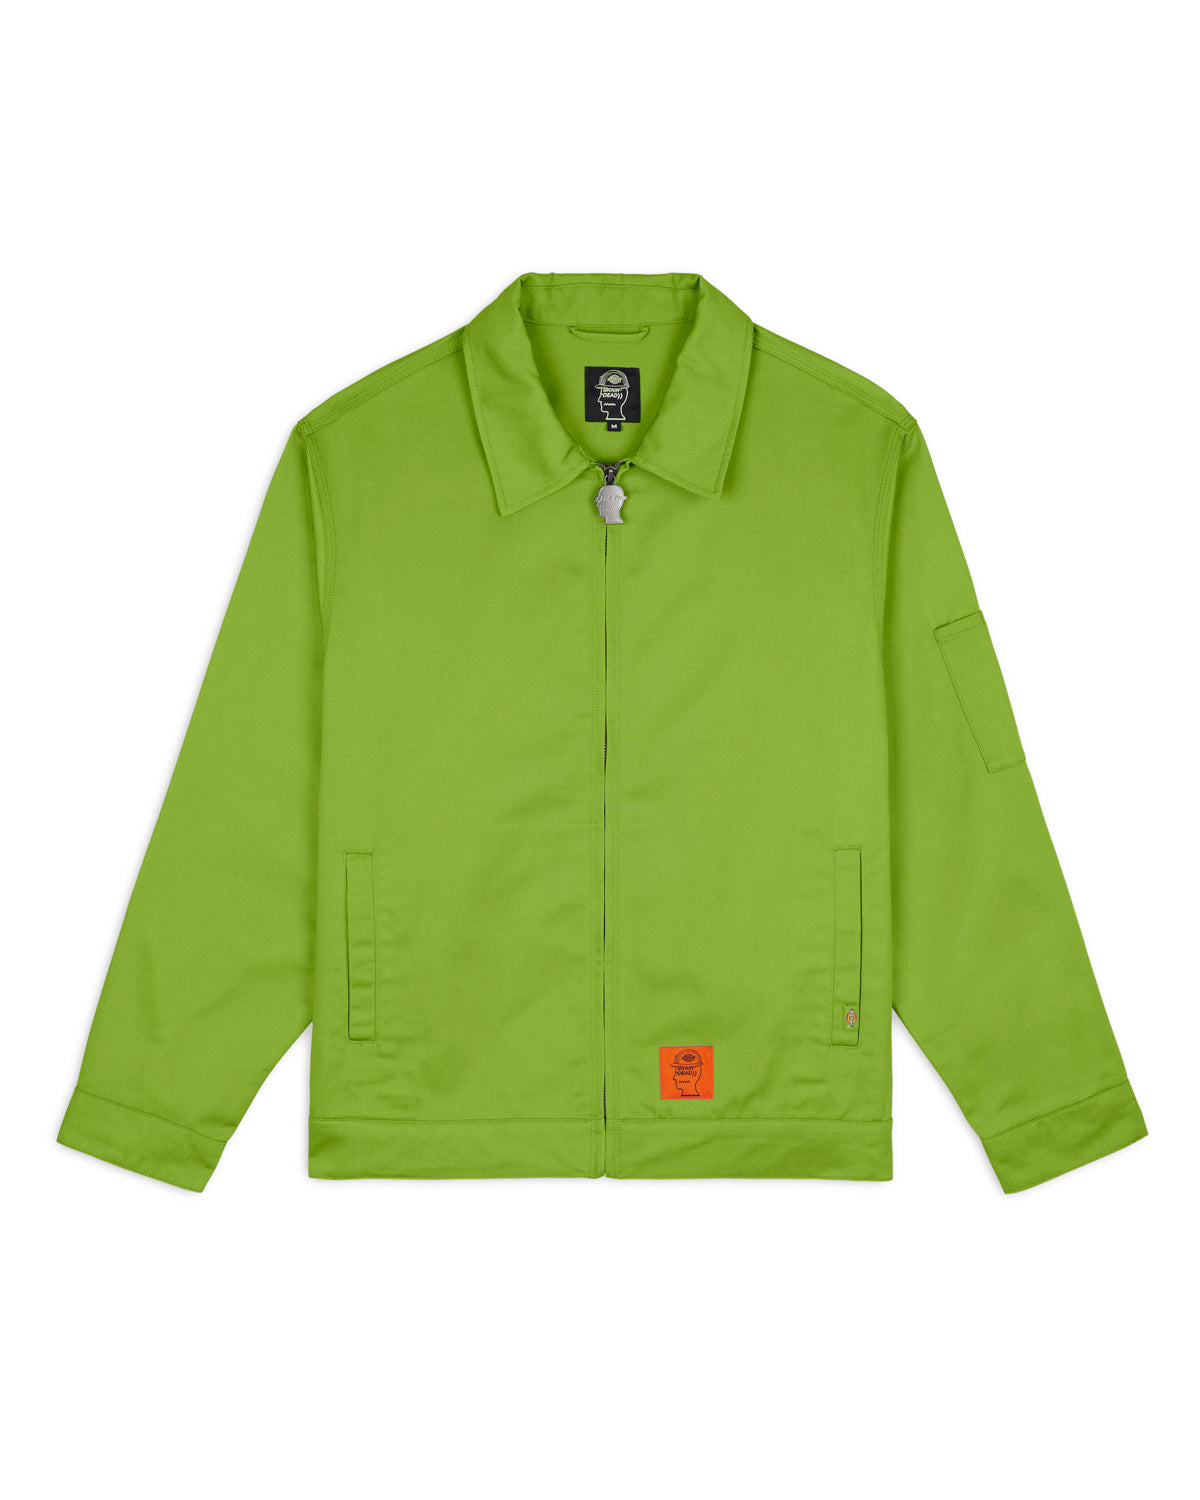 Top Dickies pocket tee putih Outwear Dickies eisenhower jacket black Bottom Dickies  874 olive green Ngam 🔥 #hodamen #portsidai #